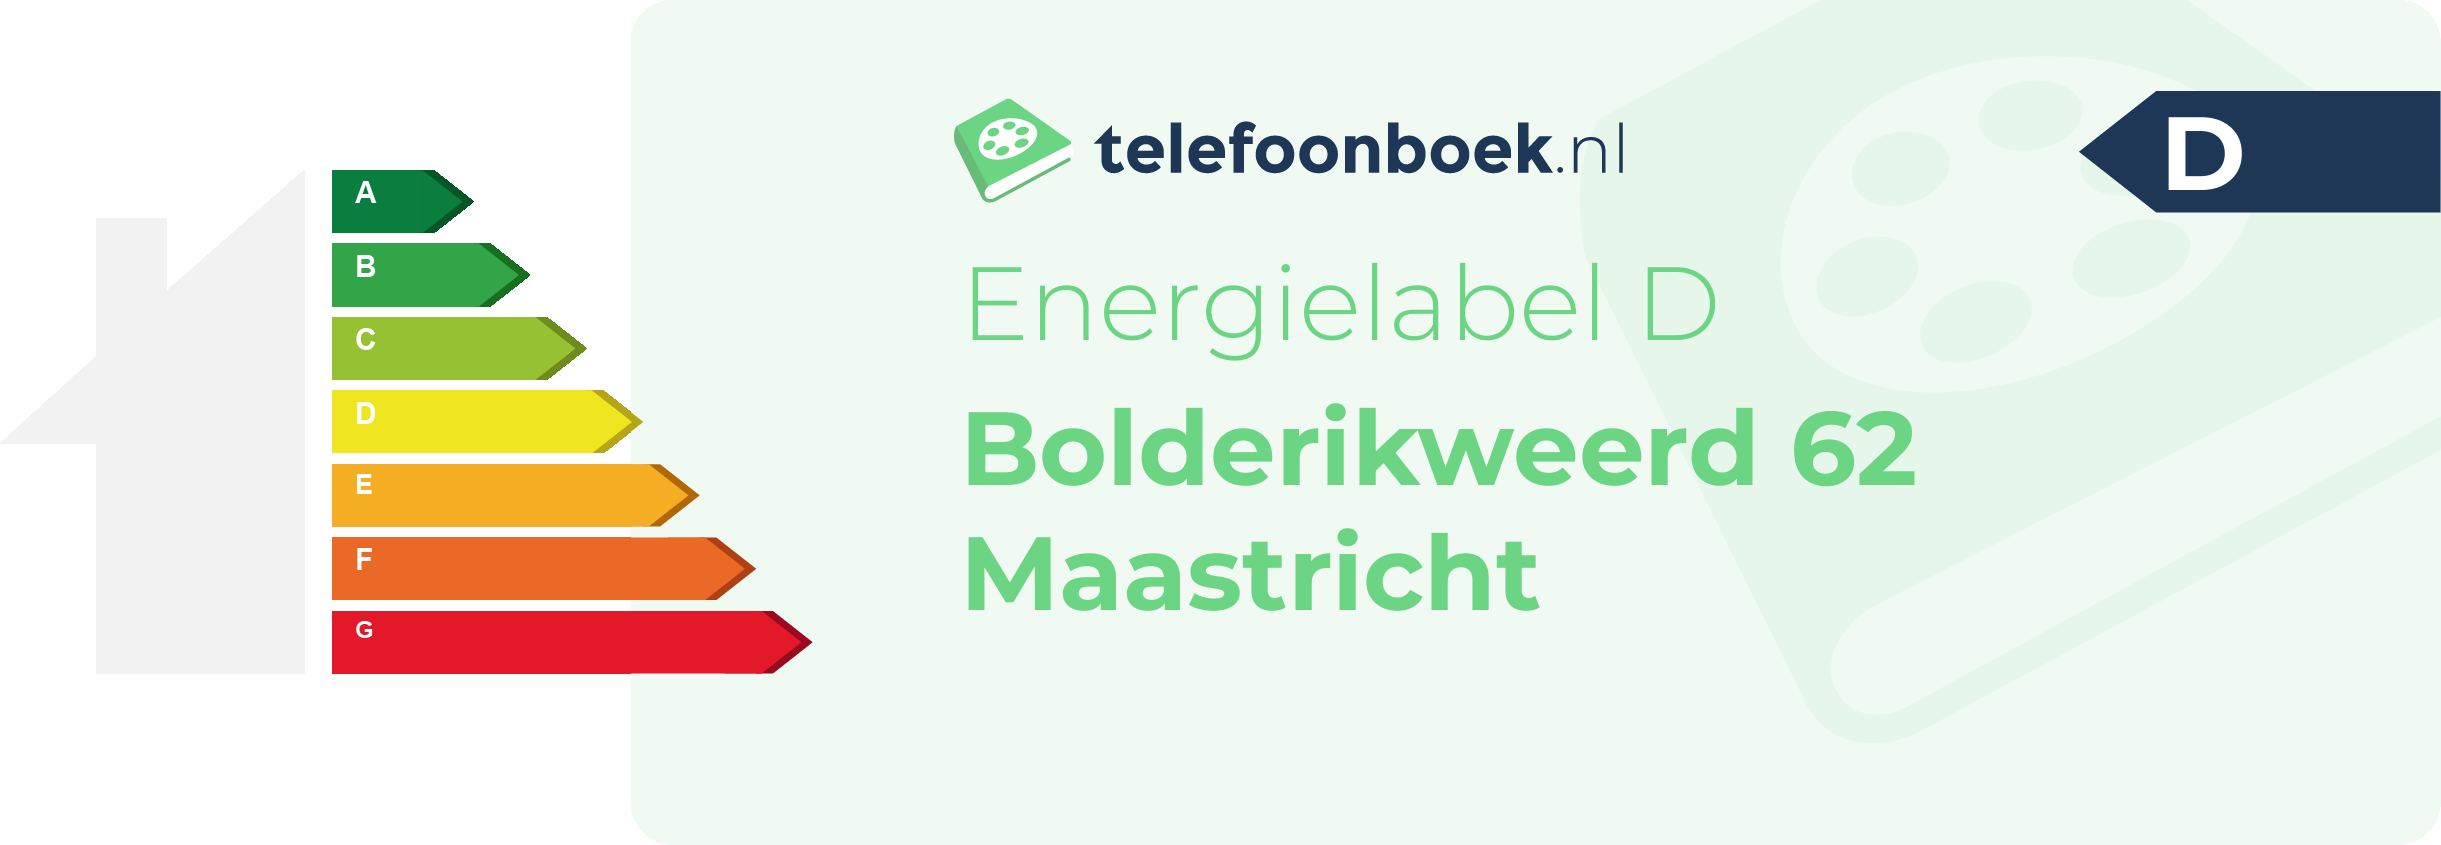 Energielabel Bolderikweerd 62 Maastricht